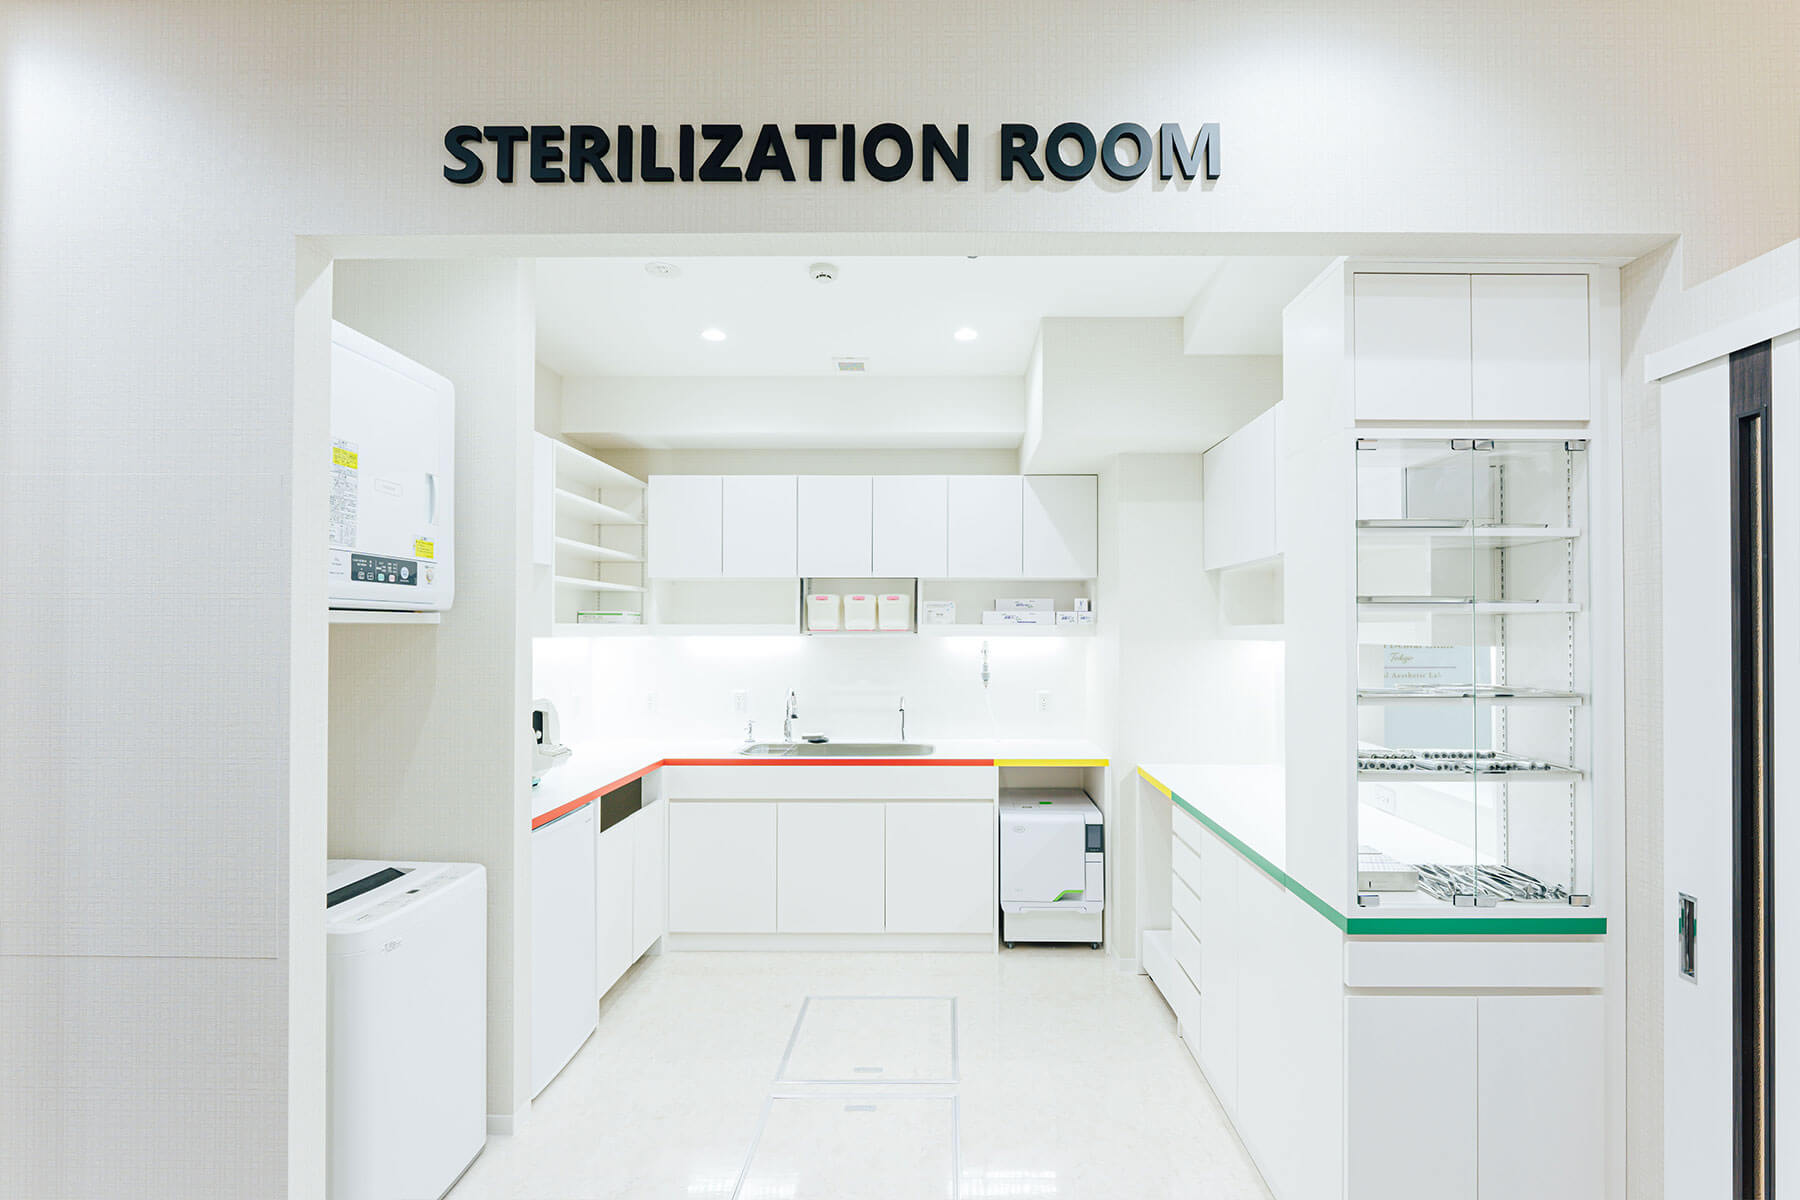 渋谷の歯医者 渋谷マロン歯科Tokyoの徹底した衛生管理を実施する洗浄滅菌室